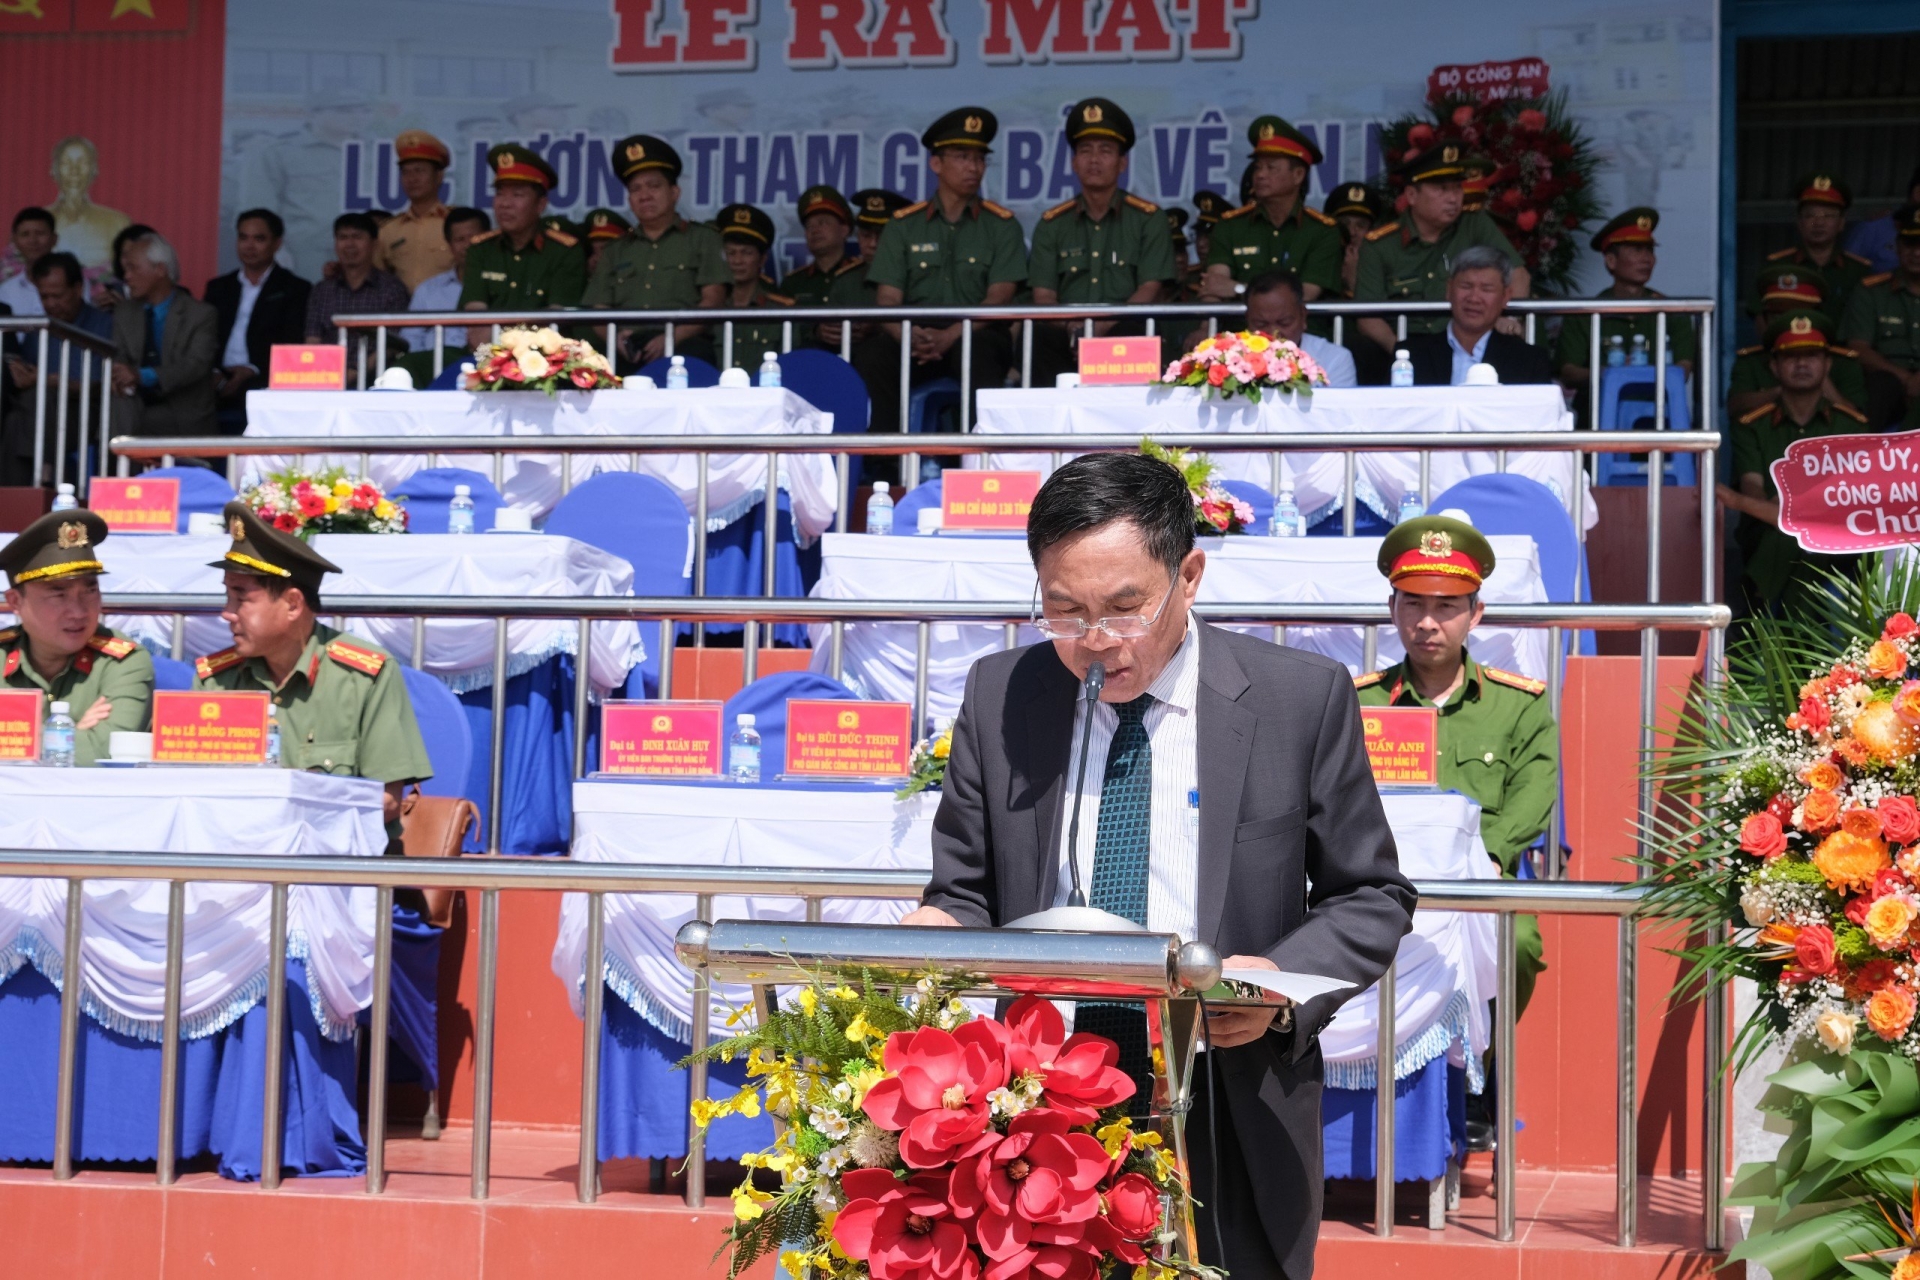 Đồng chí Võ Ngọc Hiệp - Phó Chủ tịch UBND phát biểu tại lễ ra mắt